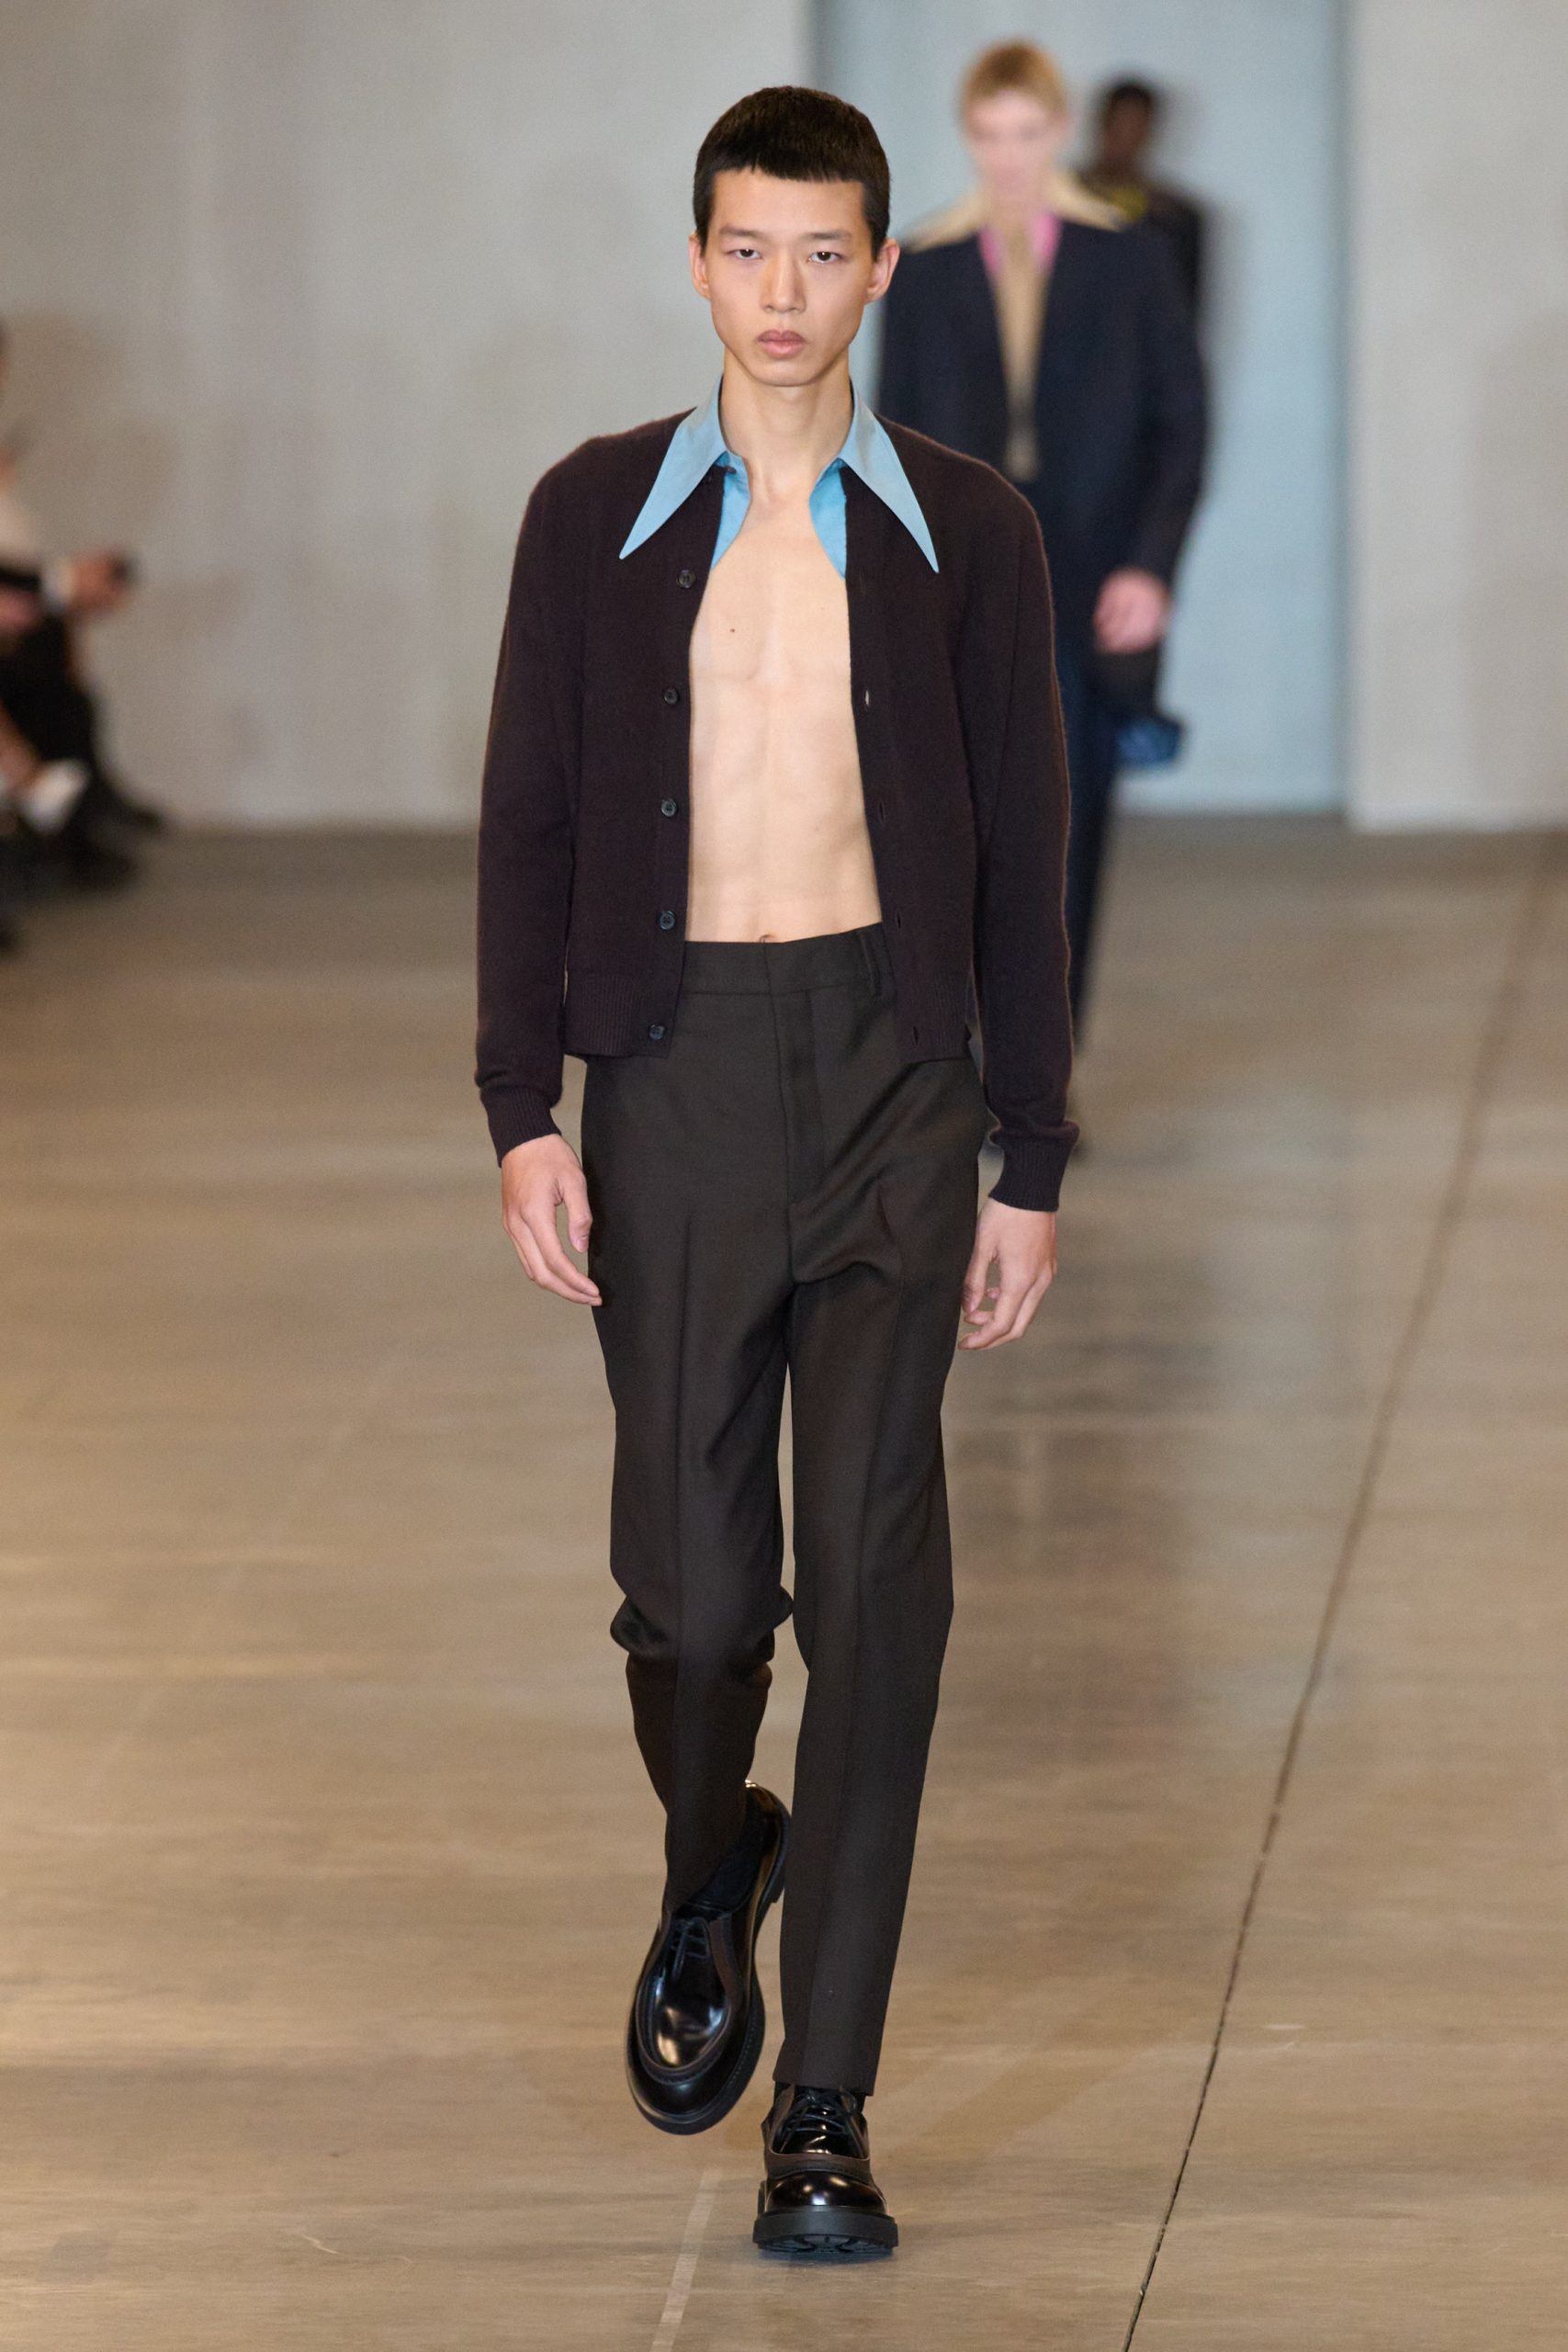 Остроконечные воротники и габаритные куртки — главные образы мужской коллекции Prada